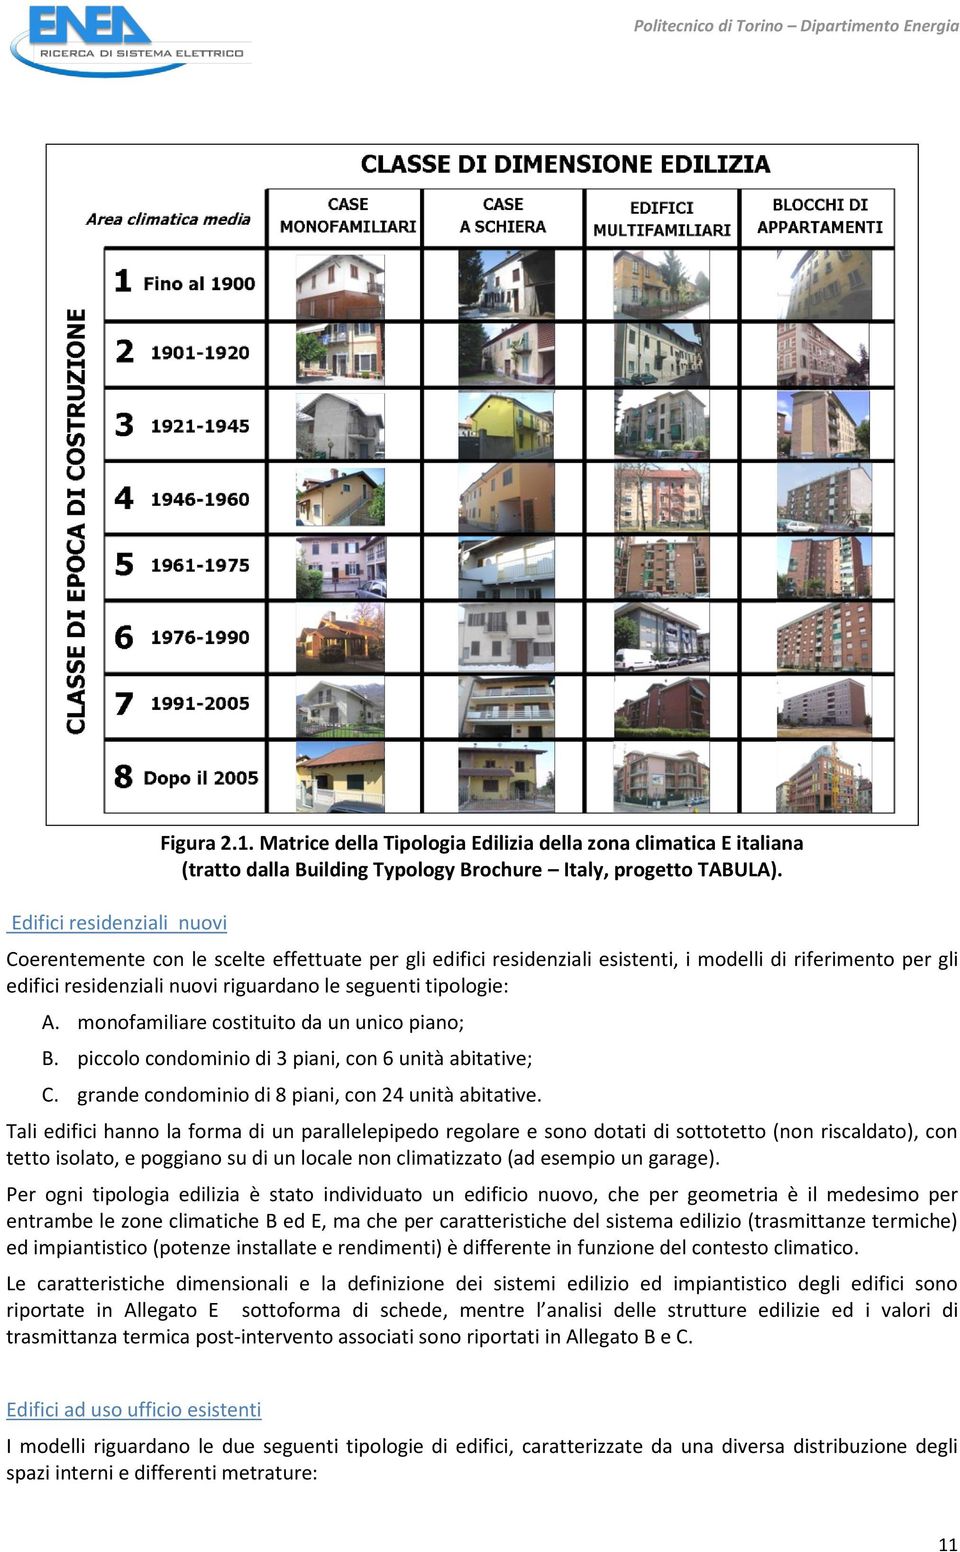 Coerentemente con le scelte effettuate per gli edifici residenziali esistenti, i modelli di riferimento per gli edifici residenziali nuovi riguardano le seguenti tipologie: A.